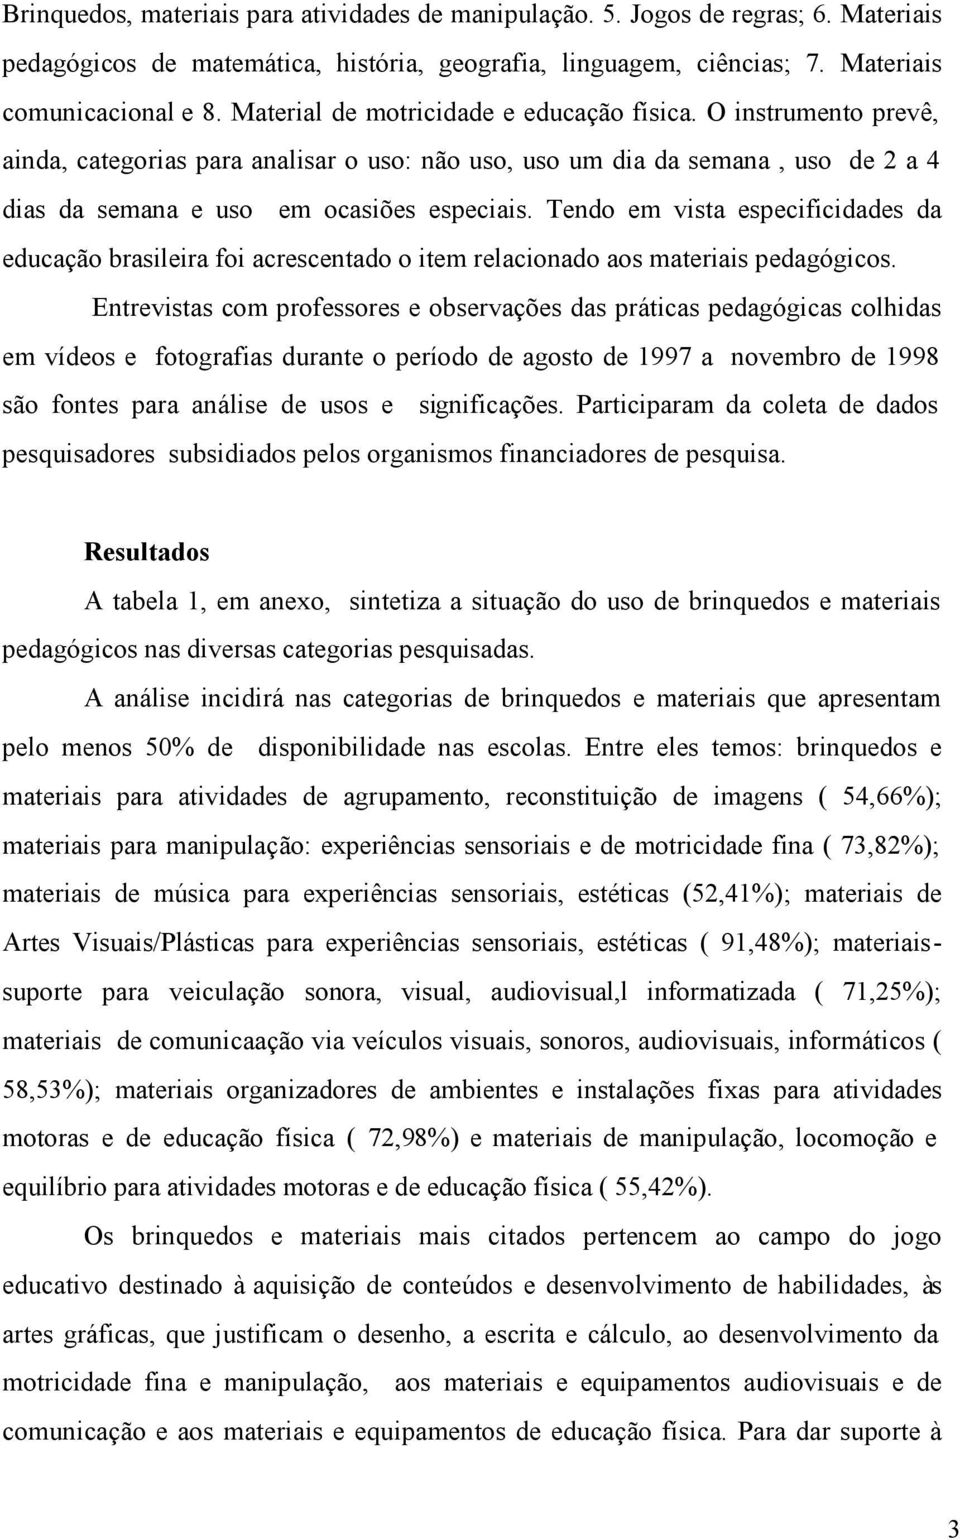 Tendo em vista especificidades da educação brasileira foi acrescentado o item relacionado aos materiais pedagógicos.